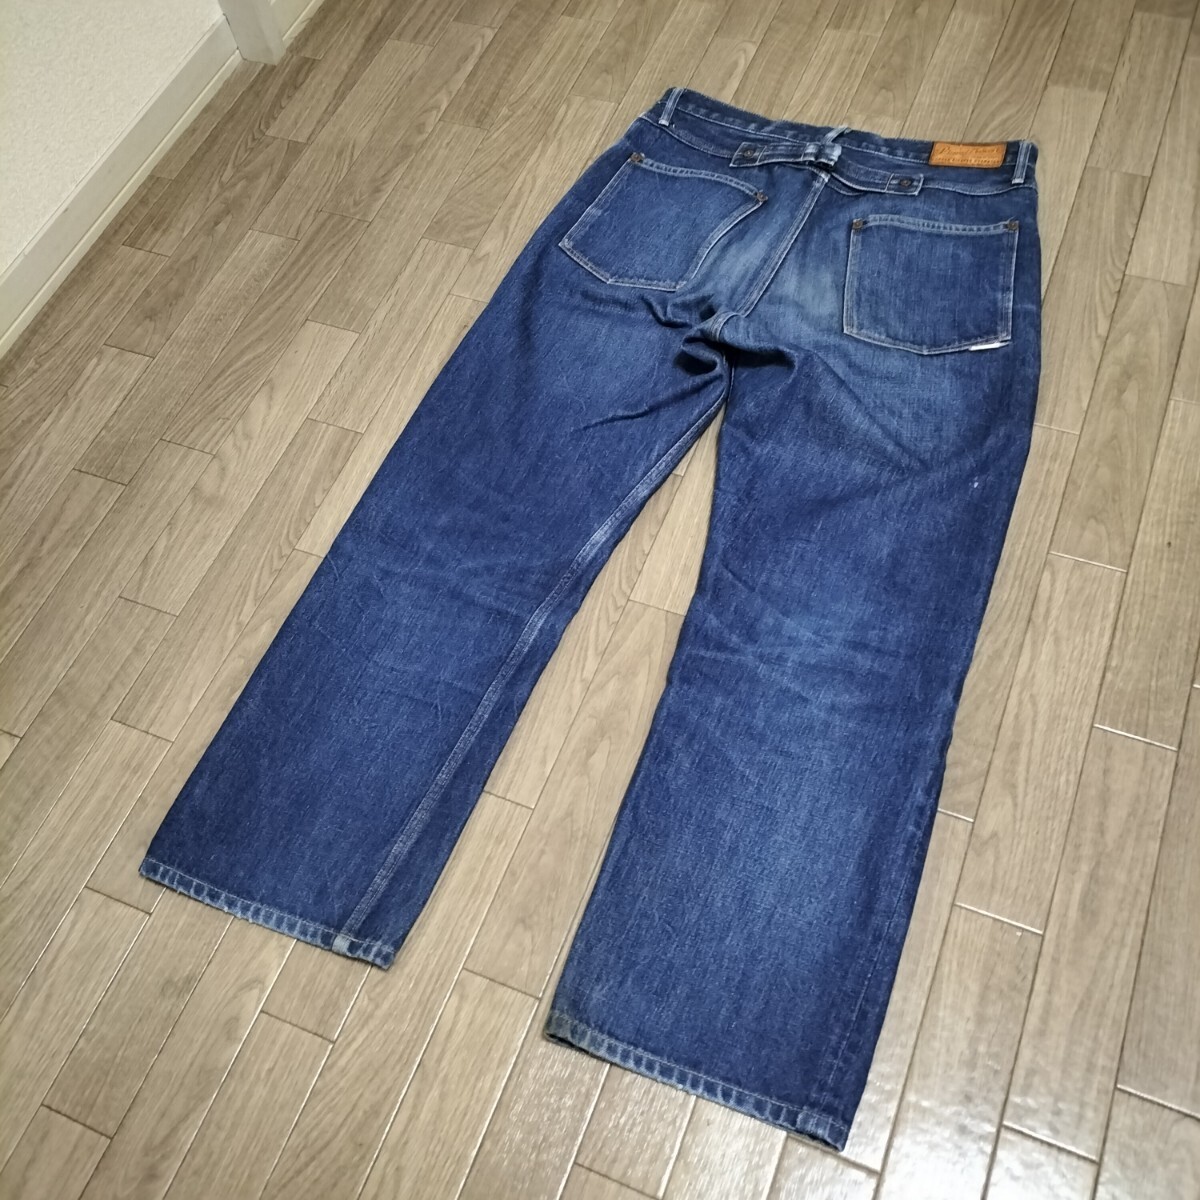 *PHIGVEL PMV-301 Denim брюки джинсы ji- хлеб низ cell bichi красный уголок sinchi задний W32 индиго fig bell сделано в Японии б/у одежда USED